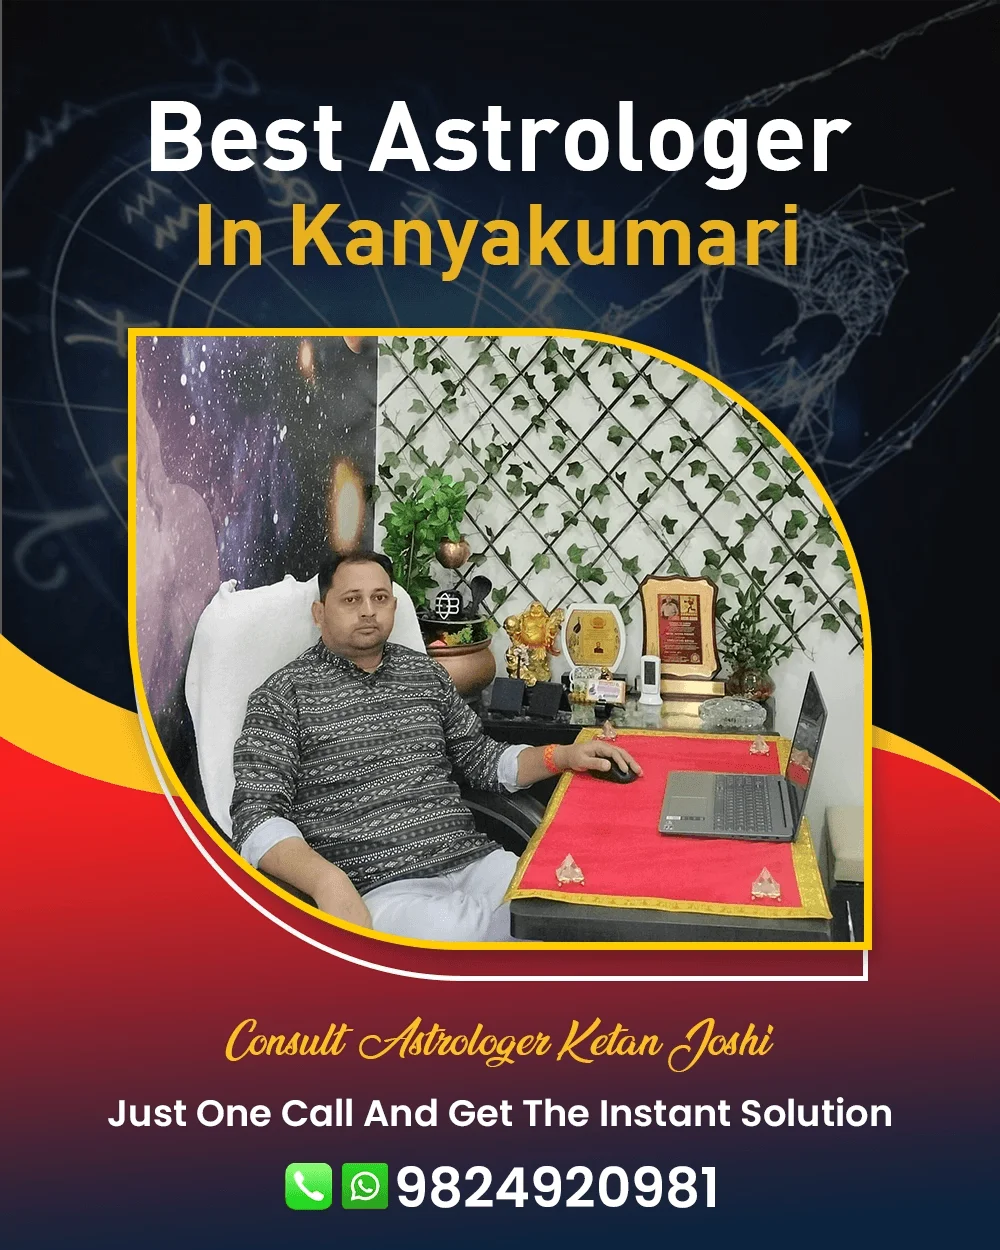 Best Astrologer In Kanyakumari